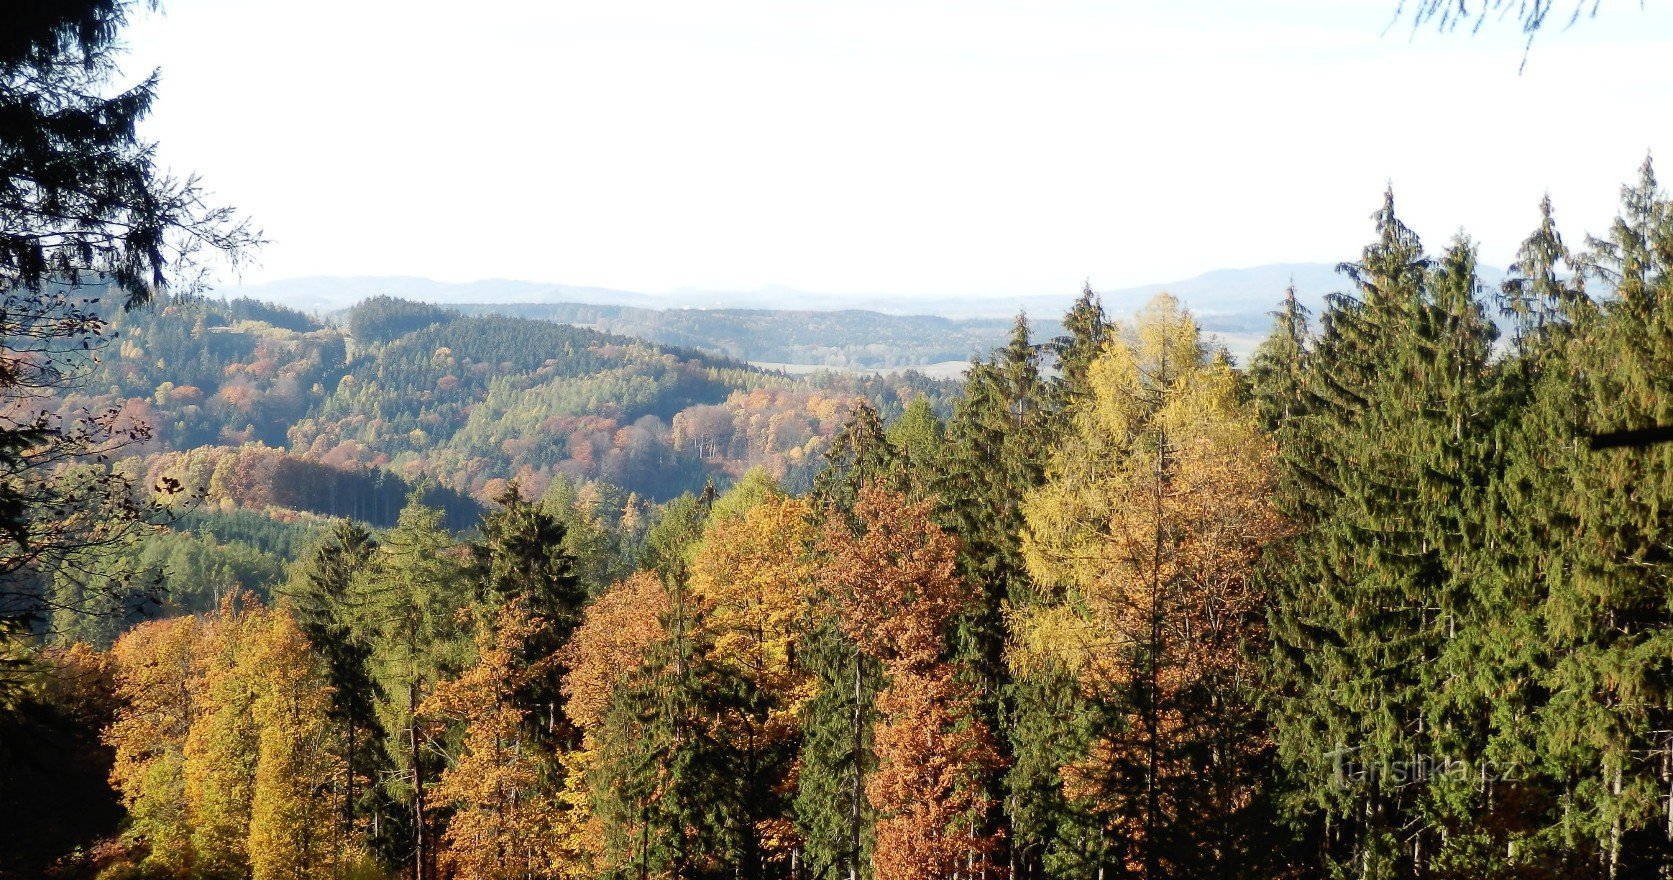 Omejen pogled na Jičín in Bohemian Paradise